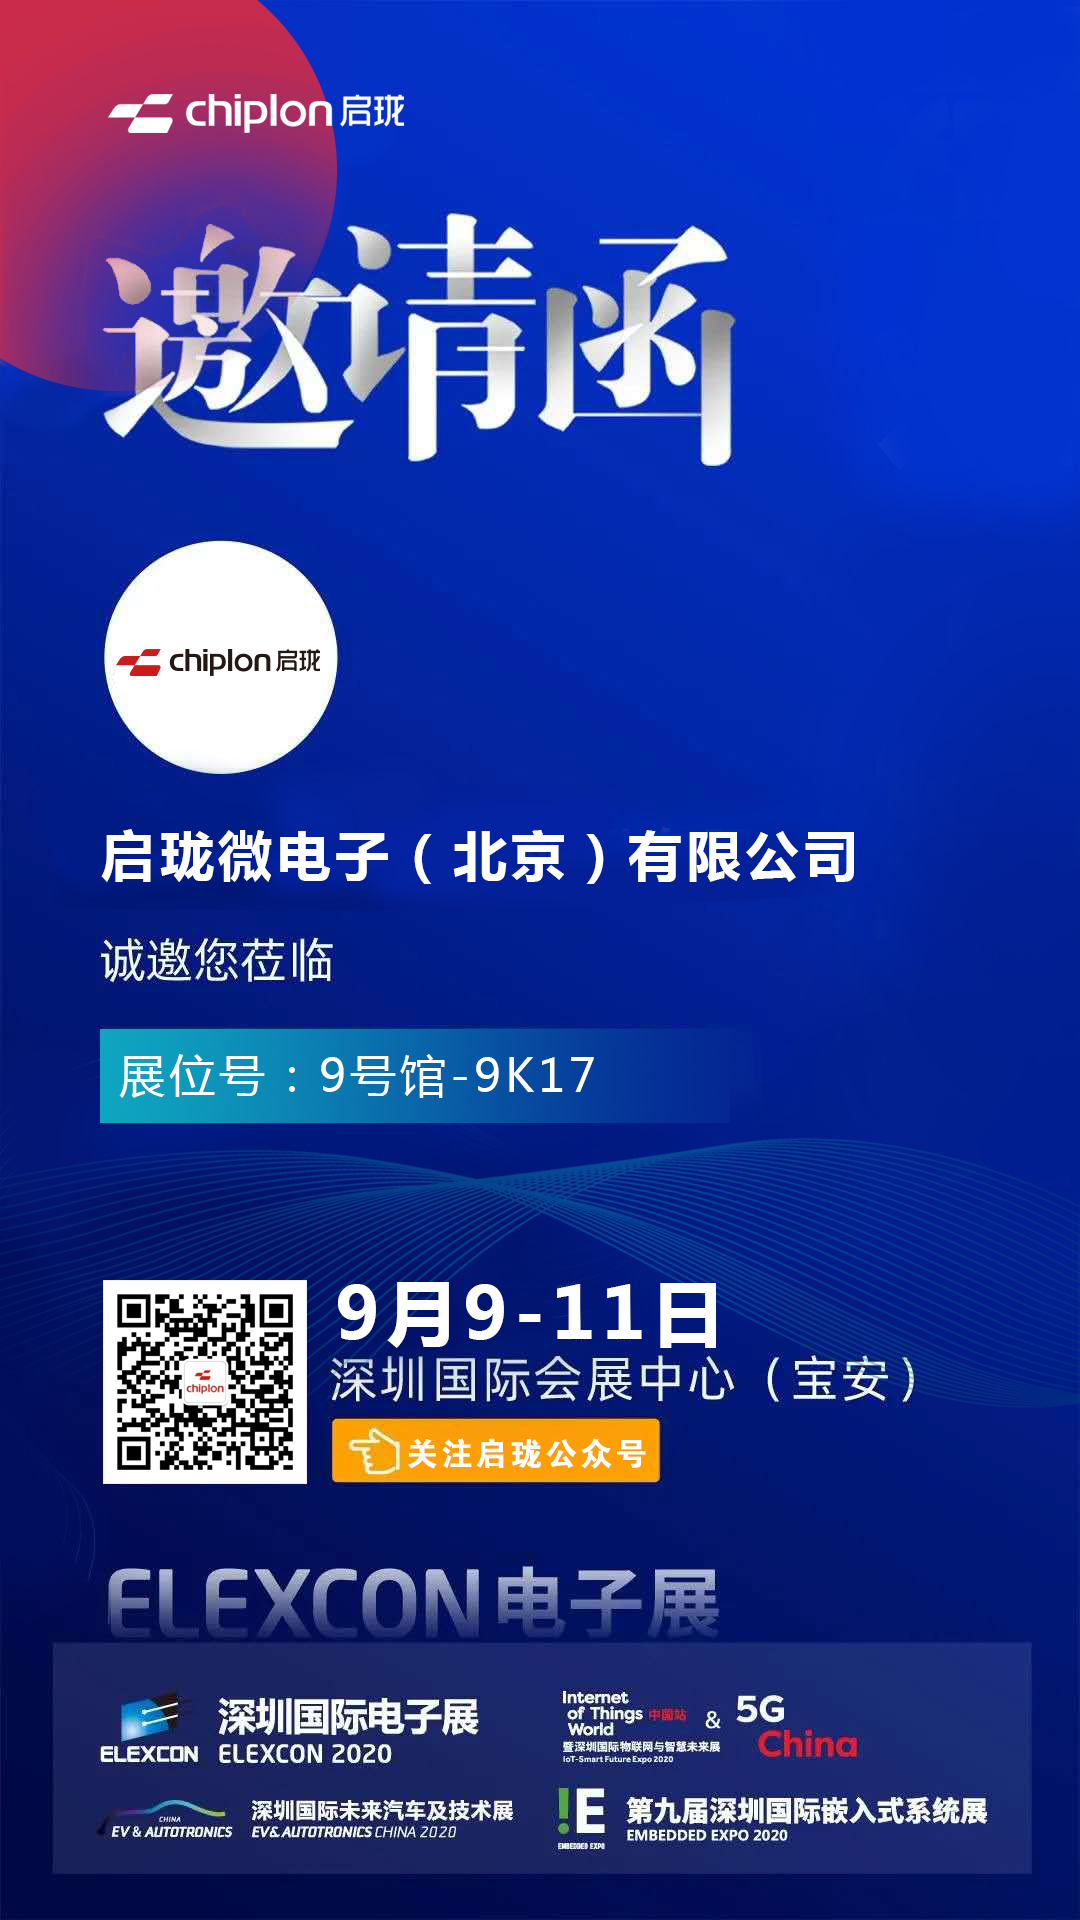 倒计时3天，启珑微电子“拍了拍”你，喊你一起去深圳国际电子展ELEXCON 2020！